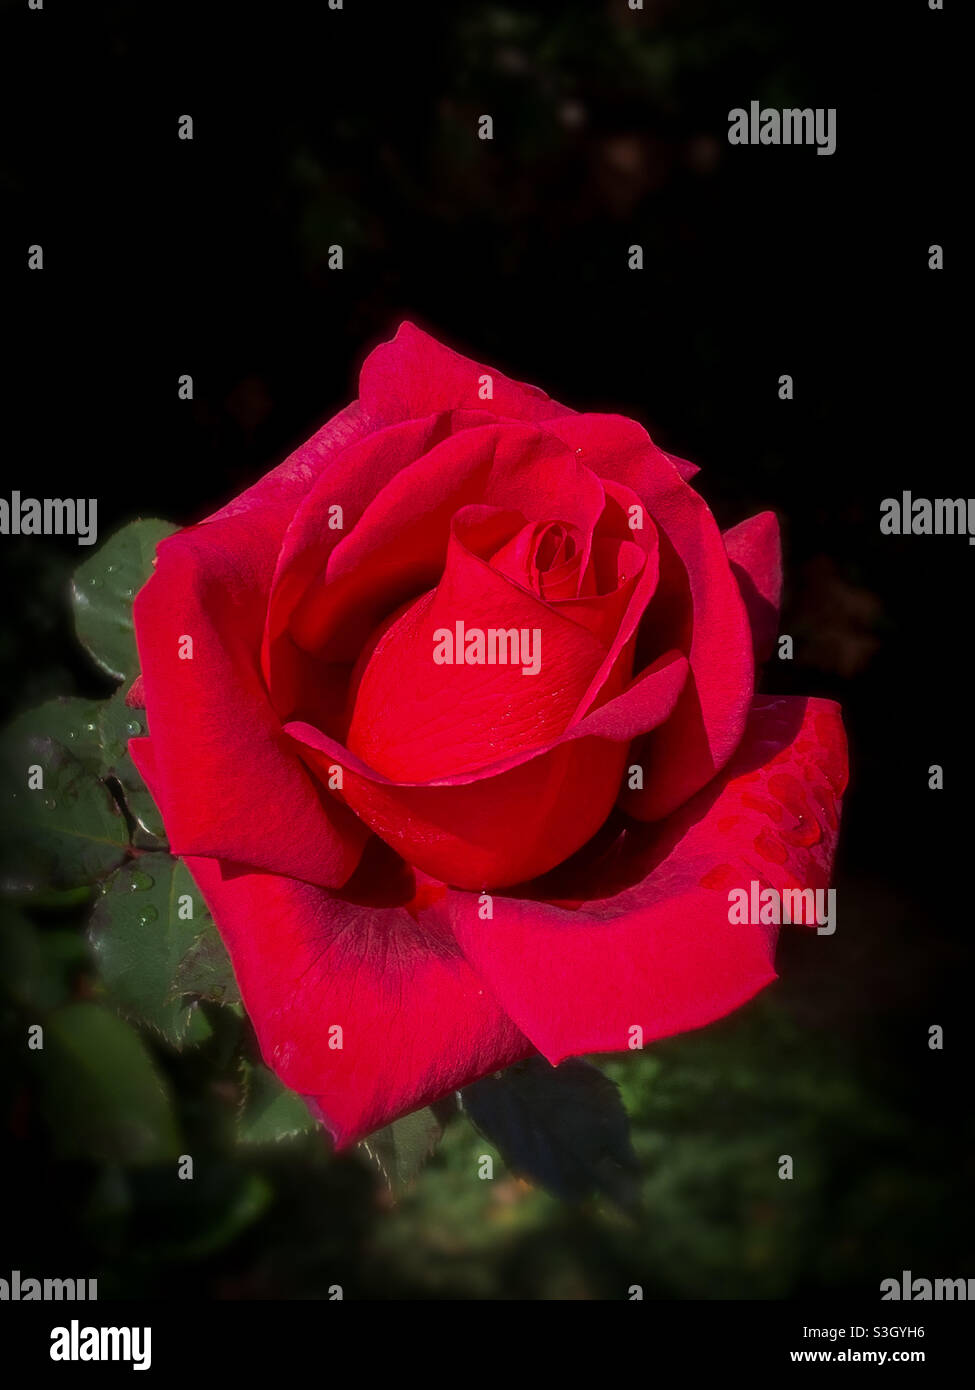 Belle ouverture de rose rouge avec des gouttelettes d'eau sur les pétales avec un fond sombre Banque D'Images